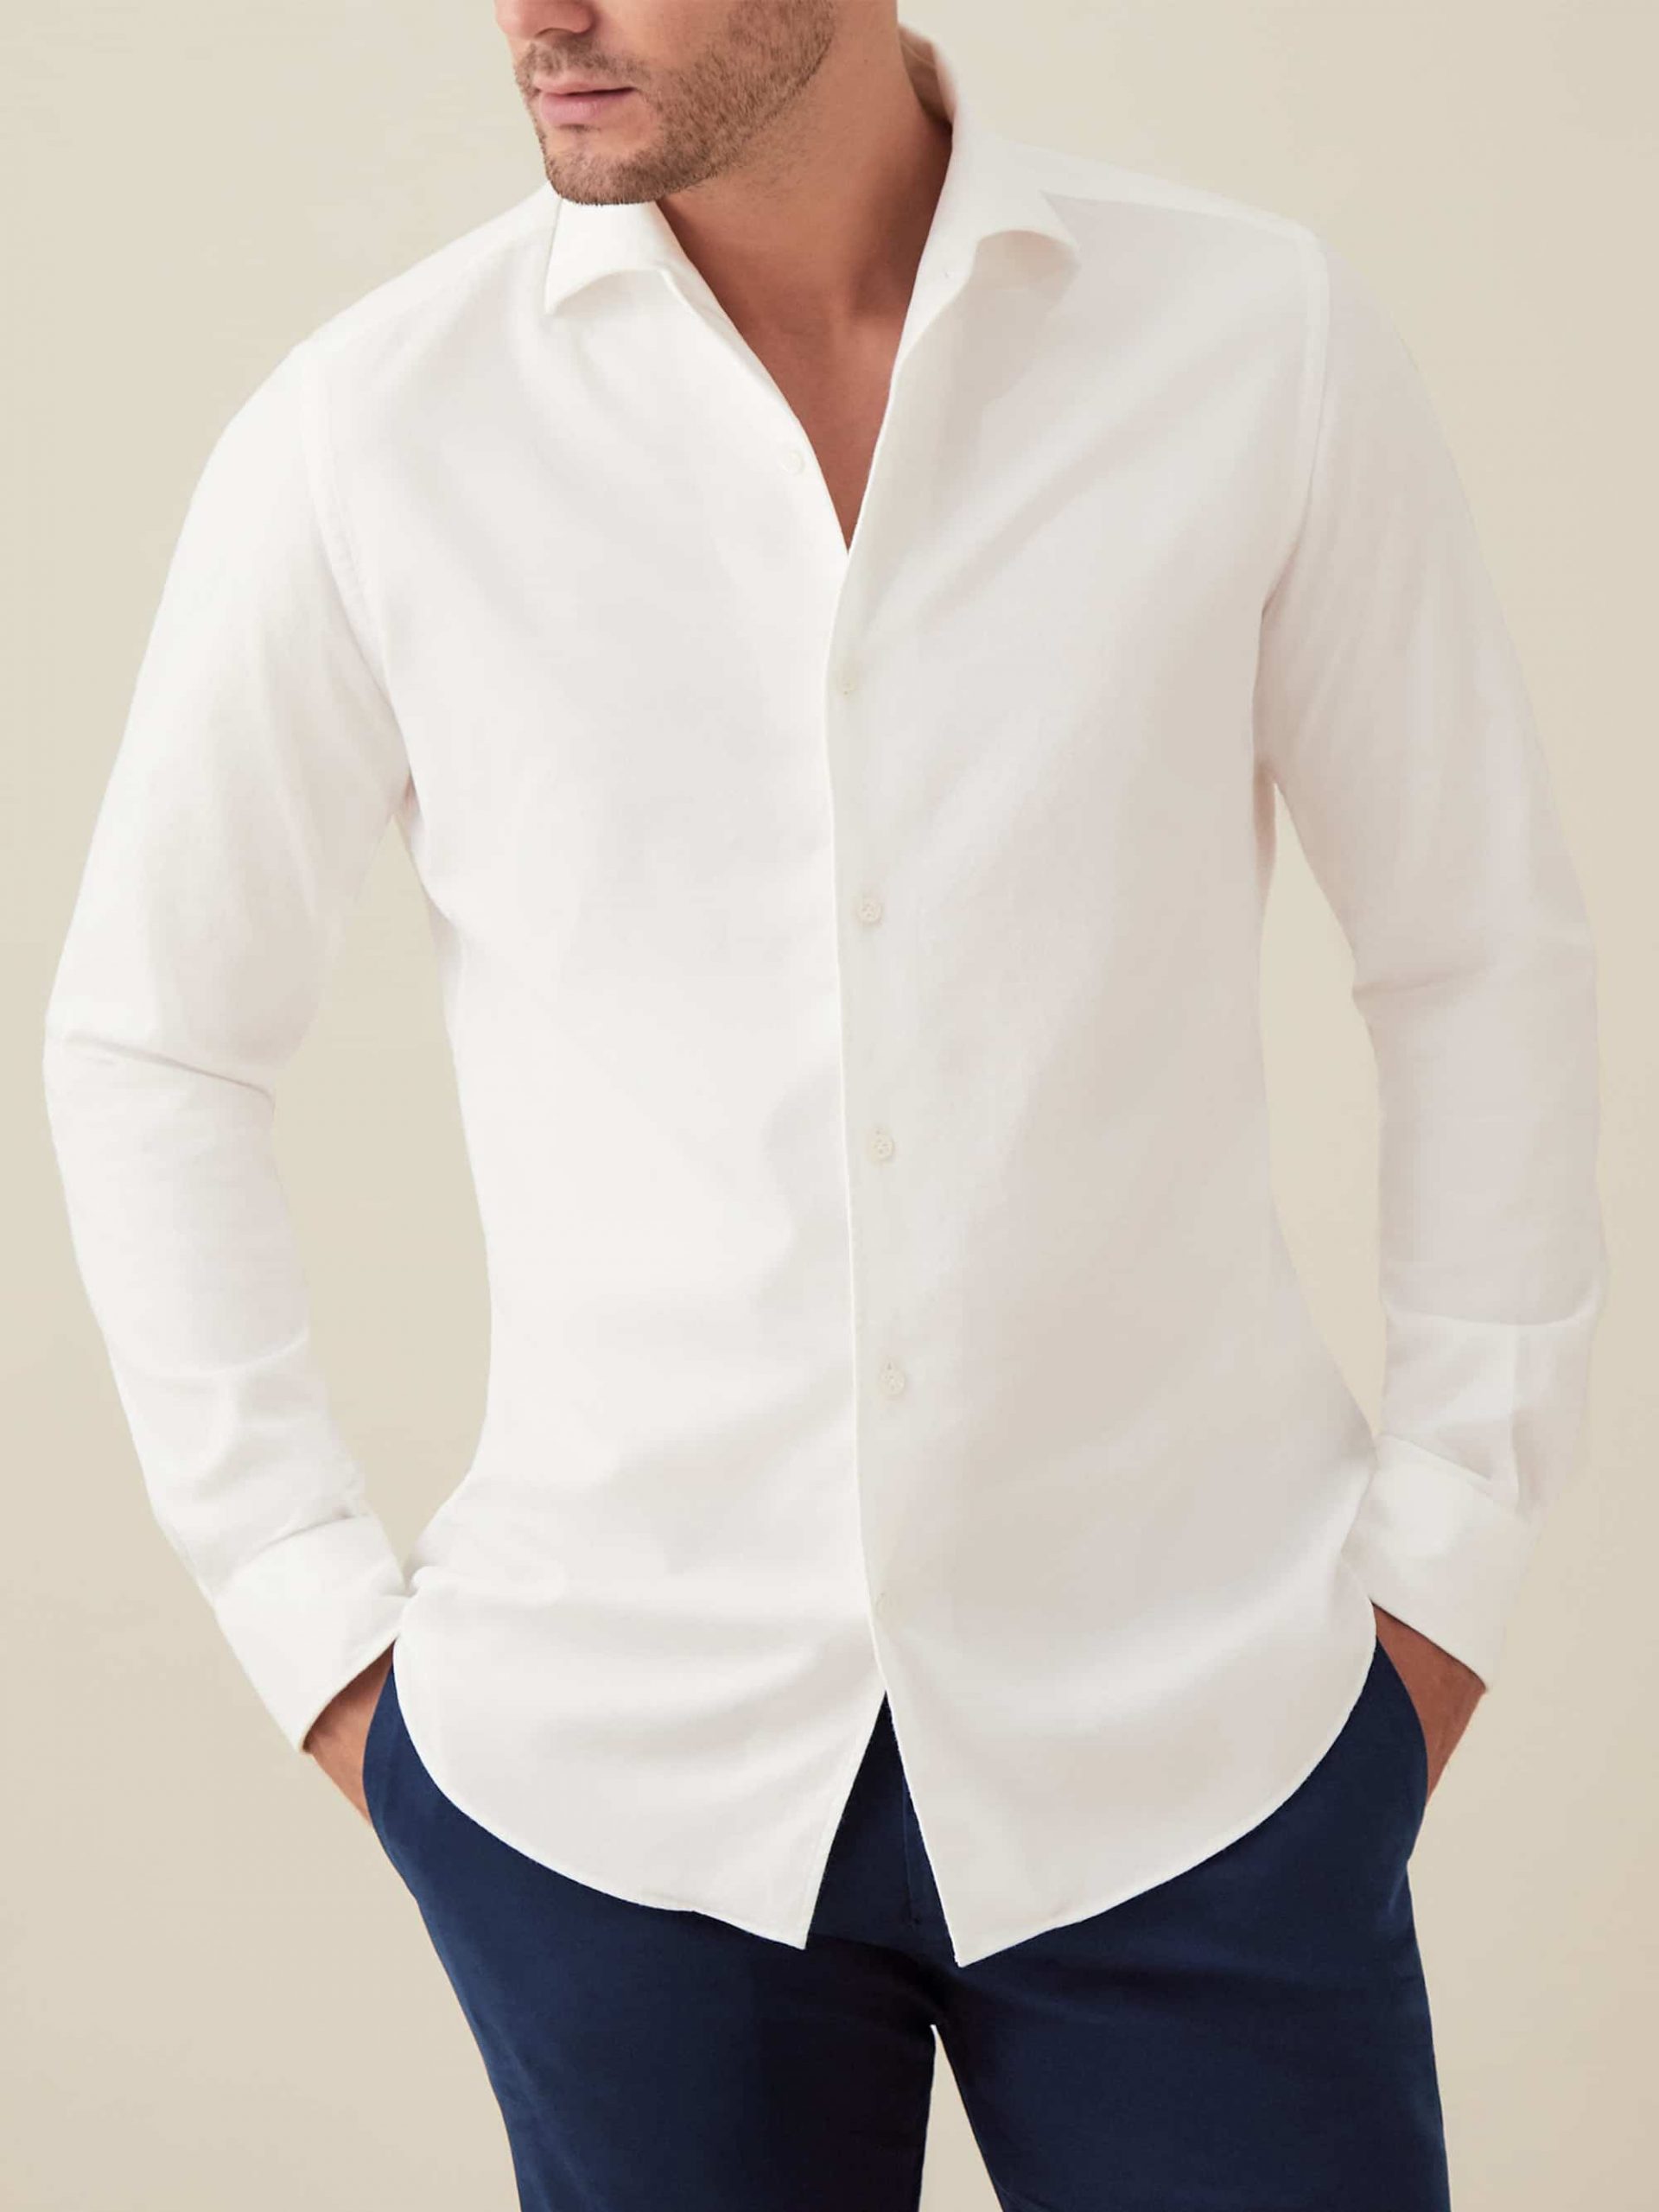 https://rog.com.pk/wp/wp-content/uploads/2020/12/Brushed-Cotton-Shirt-White-9957-scaled.jpg